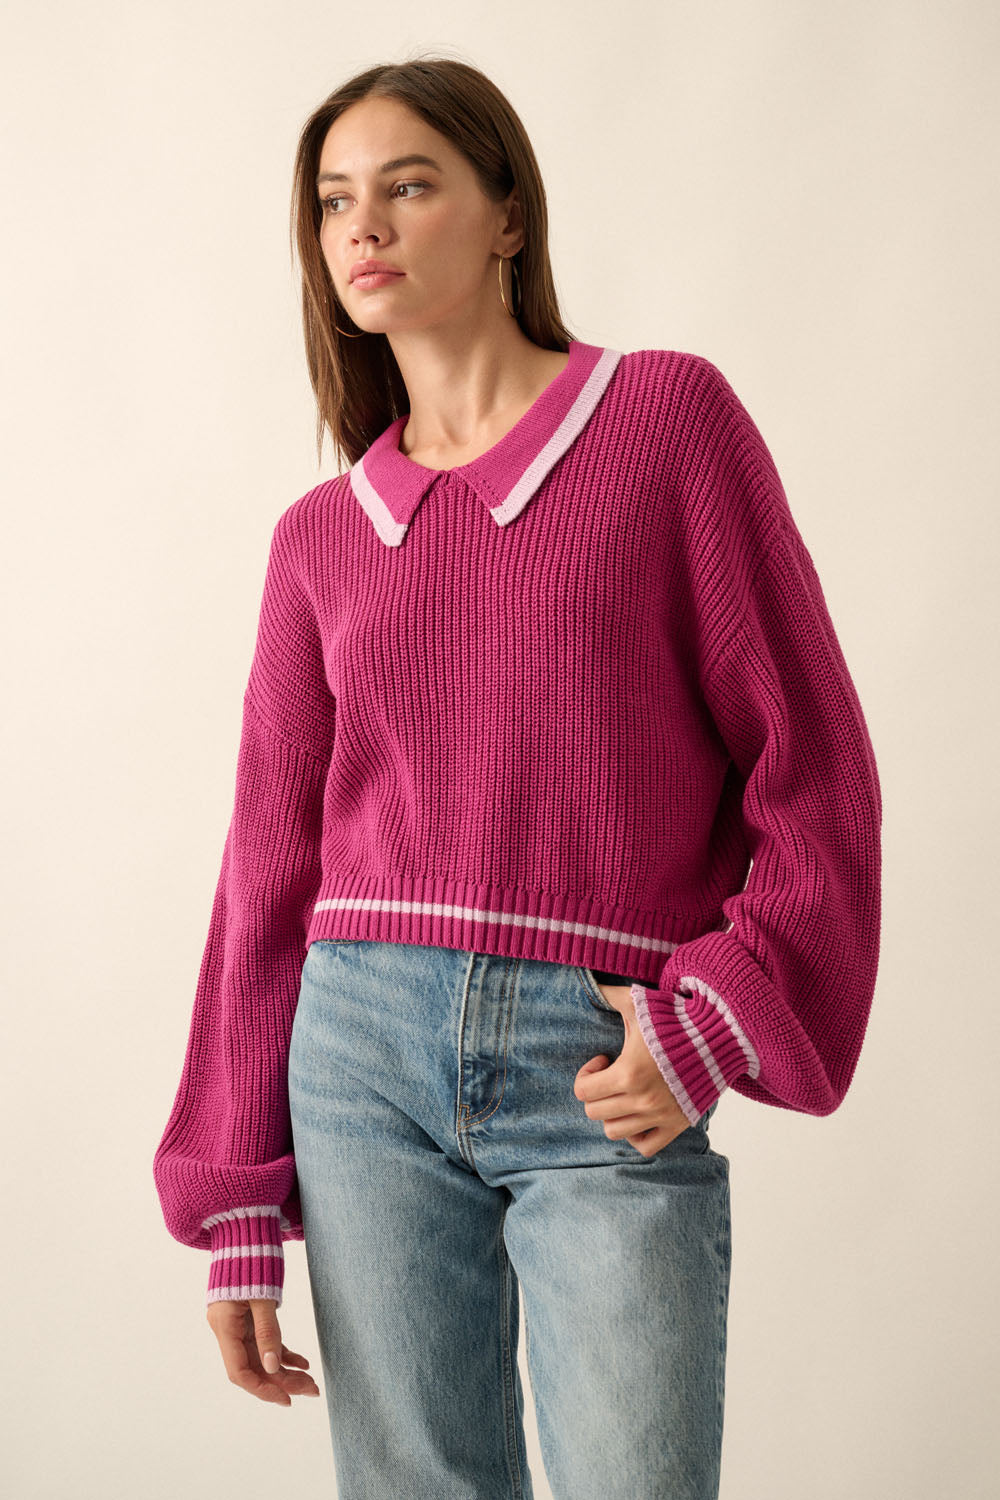 The Juliette Sweater